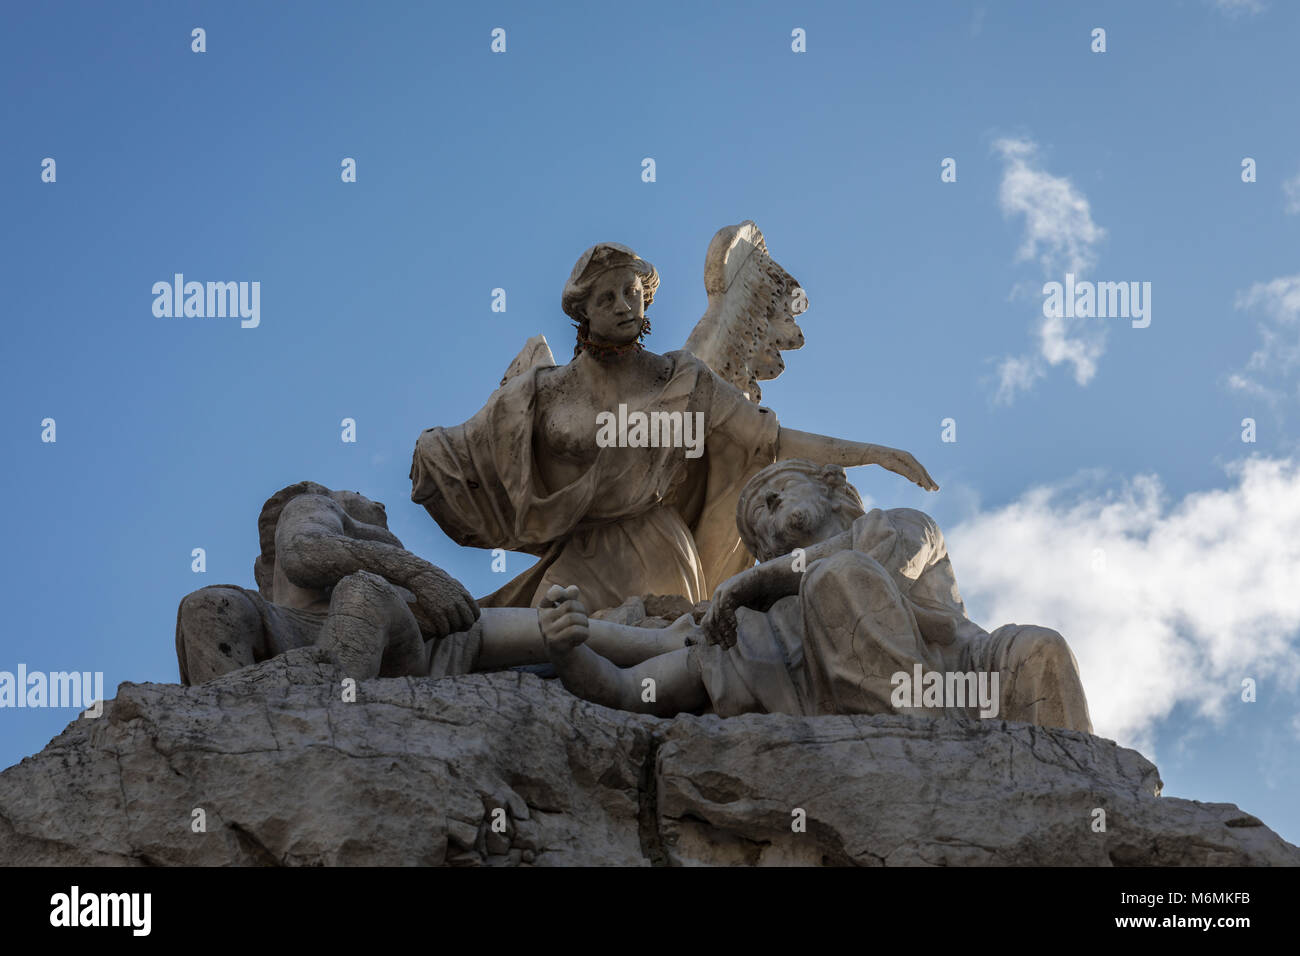 Dettaglio della Fontana dei quattro continenti (Fontana dei quattro continenti), Trieste, Friuli Venezia Giulia, Italia Foto Stock